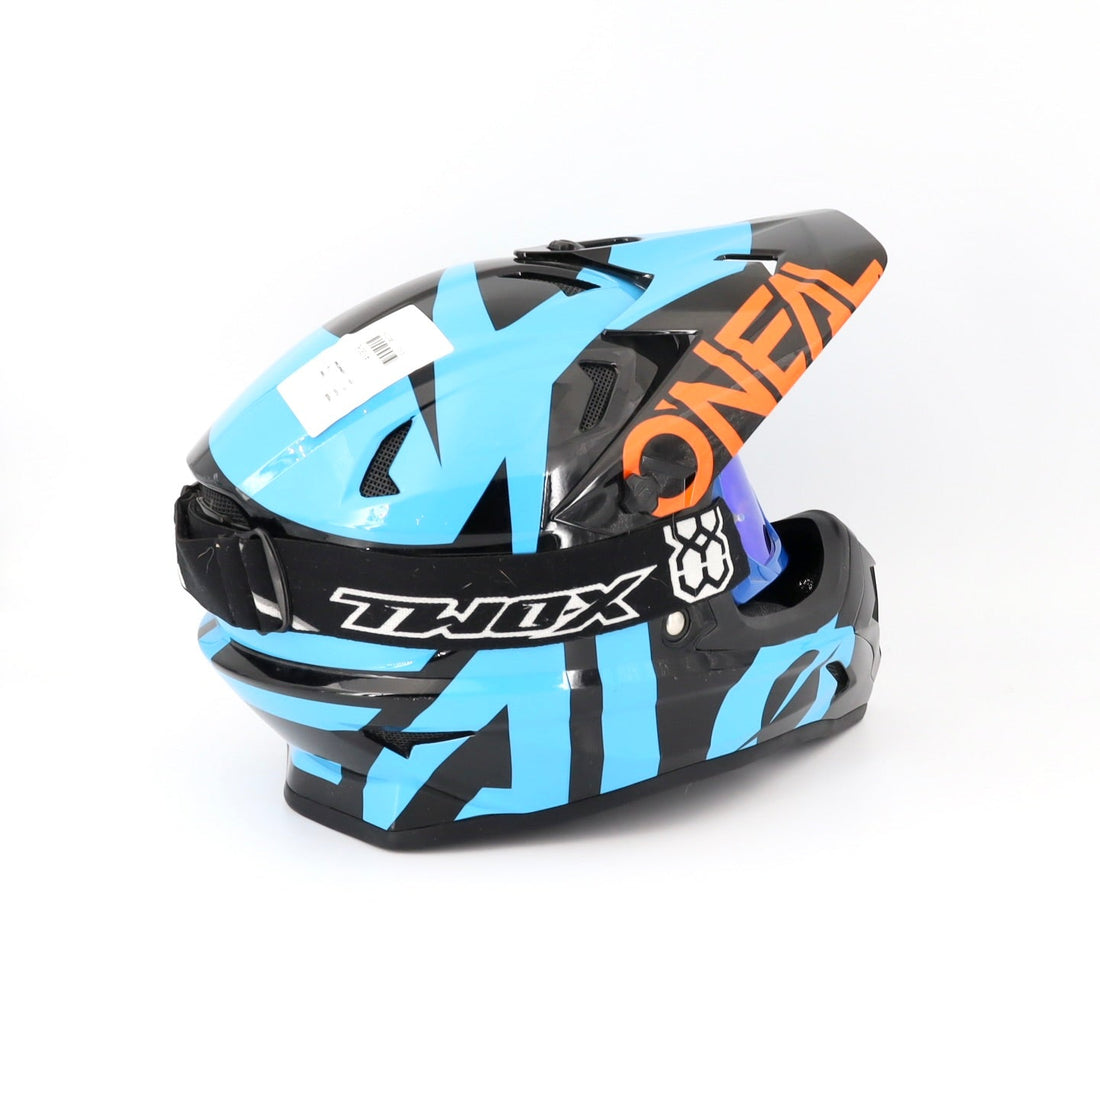 Mountainbike-Helm - Oneal - Ski - blau/schwarz - sehr guter Zustand